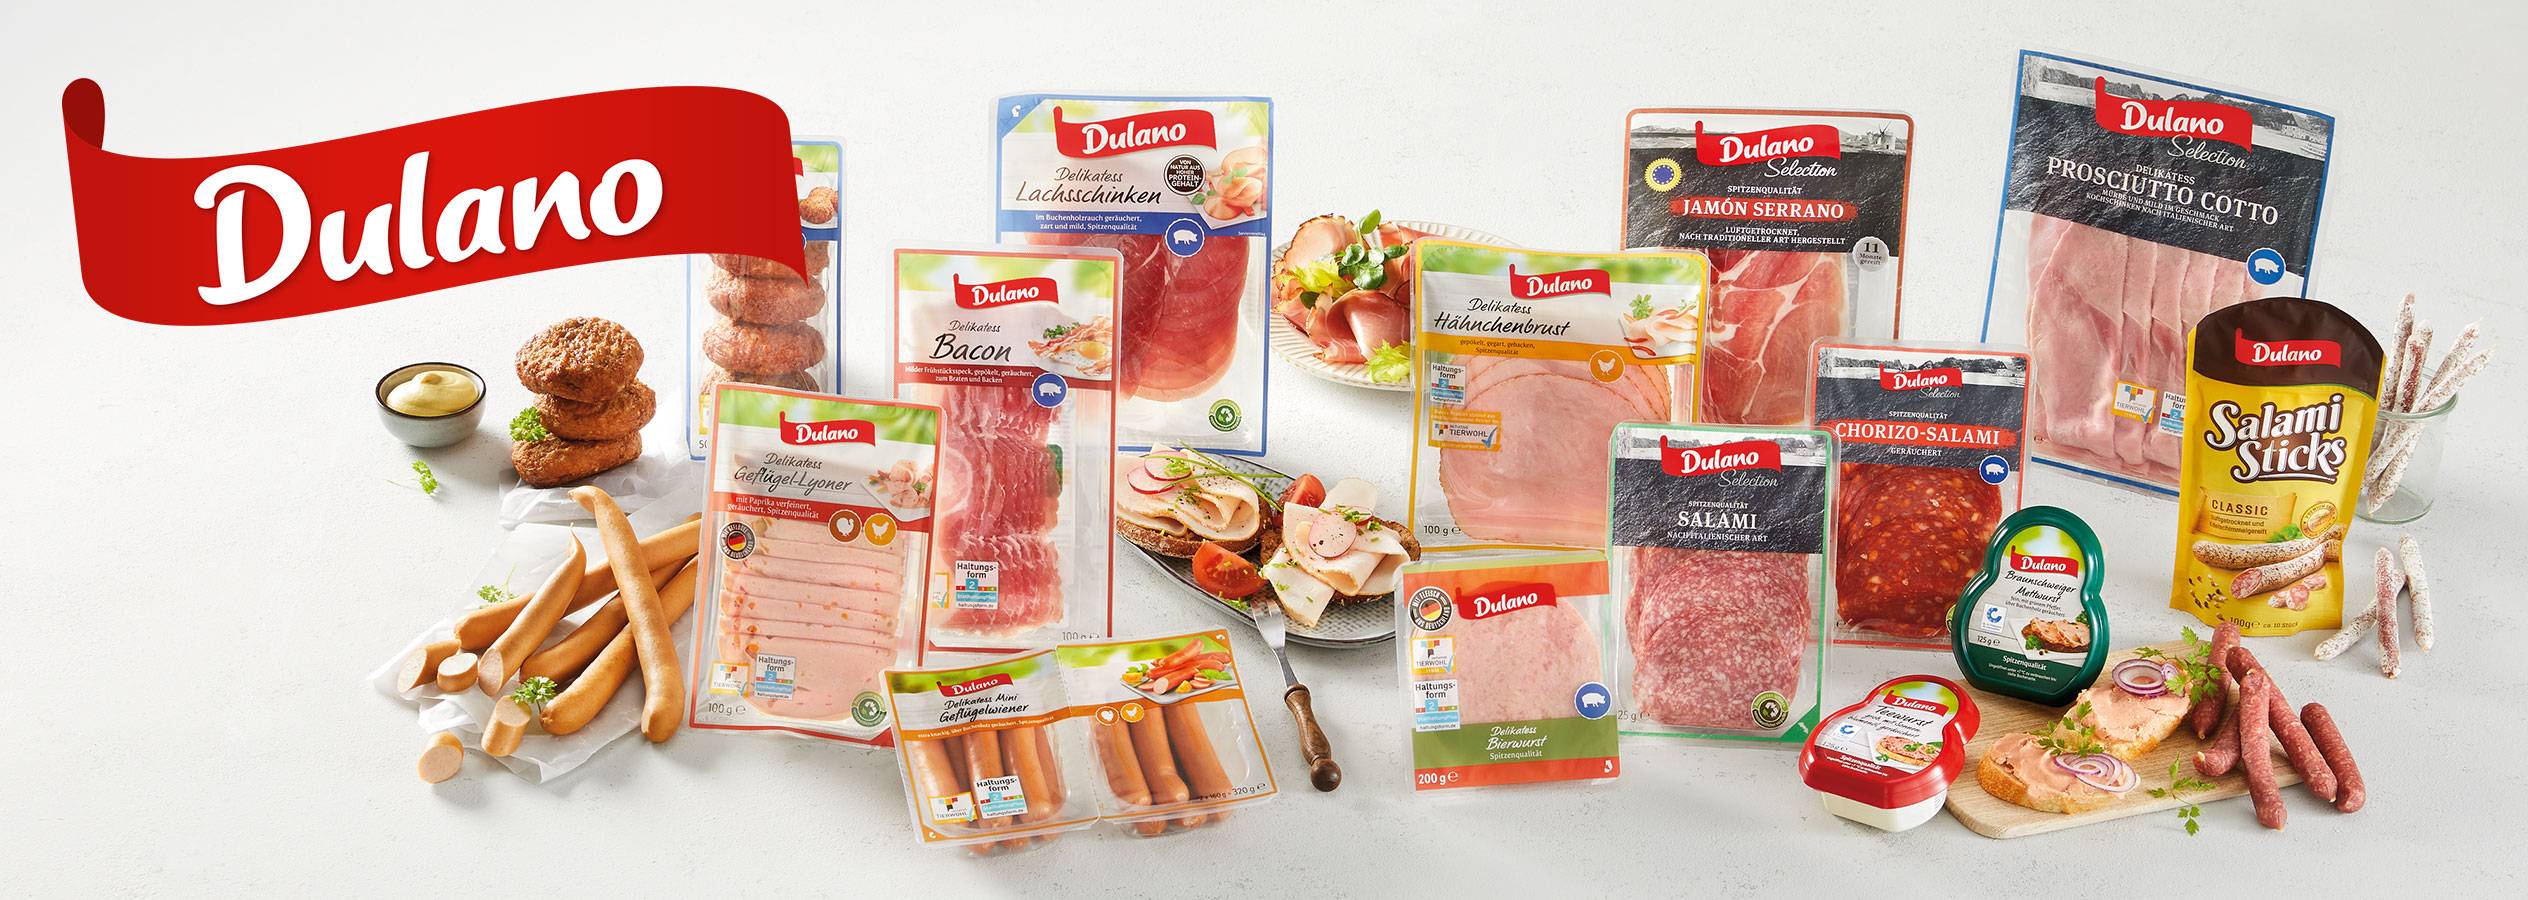 Dulano: Die Lidl Eigenmarke für bester Fleisch und Wurst in Qualität